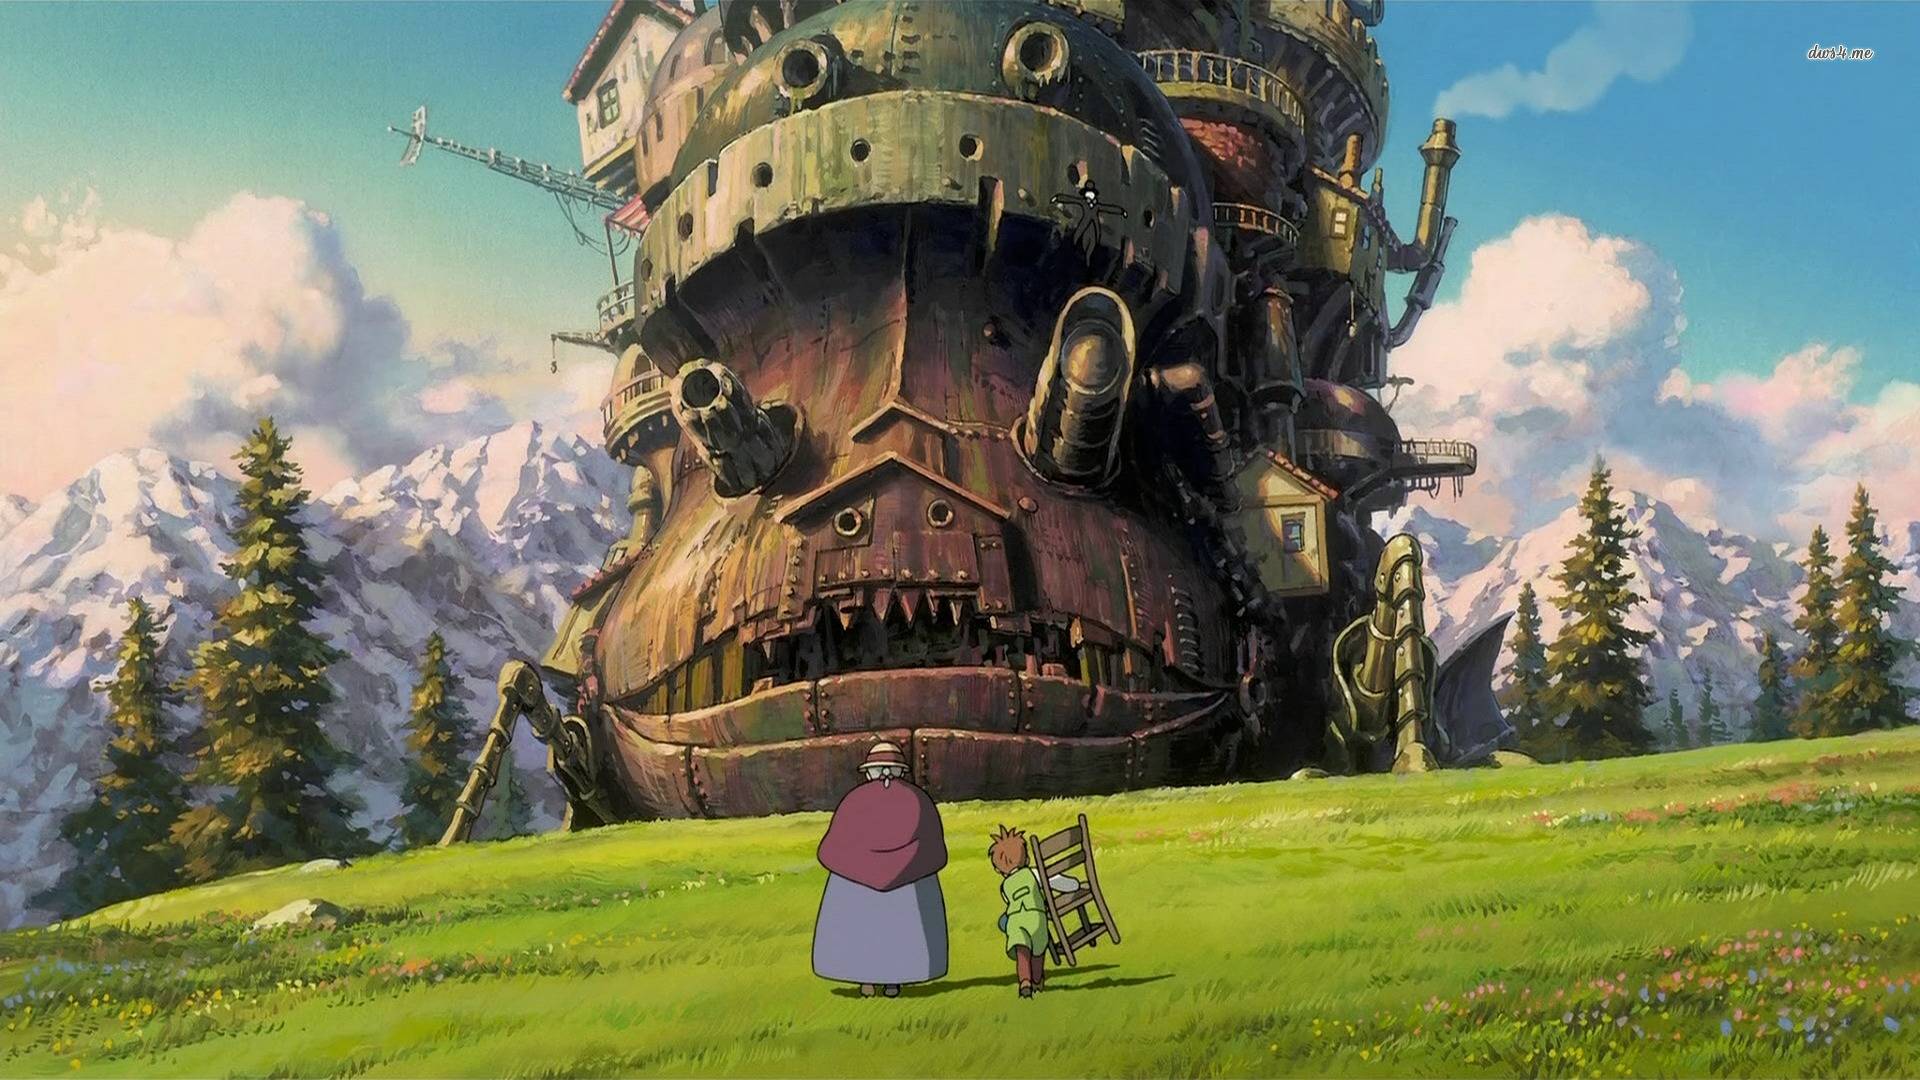 Lấy cảm hứng từ những bộ phim hoạt hình kinh điển, hình nền Studio Ghibli luôn mang đến cảm giác nhiệt huyết và bất ngờ. Với những hình ảnh được thiết kế độc đáo và tinh tế, Ghibli sẽ đem đến cho bạn những trải nghiệm thú vị khi truy cập màn hình thiết bị của mình. Hãy để Studio Ghibli phục vụ bạn và đem lại cảm giác mới lạ cho ngày hôm nay.